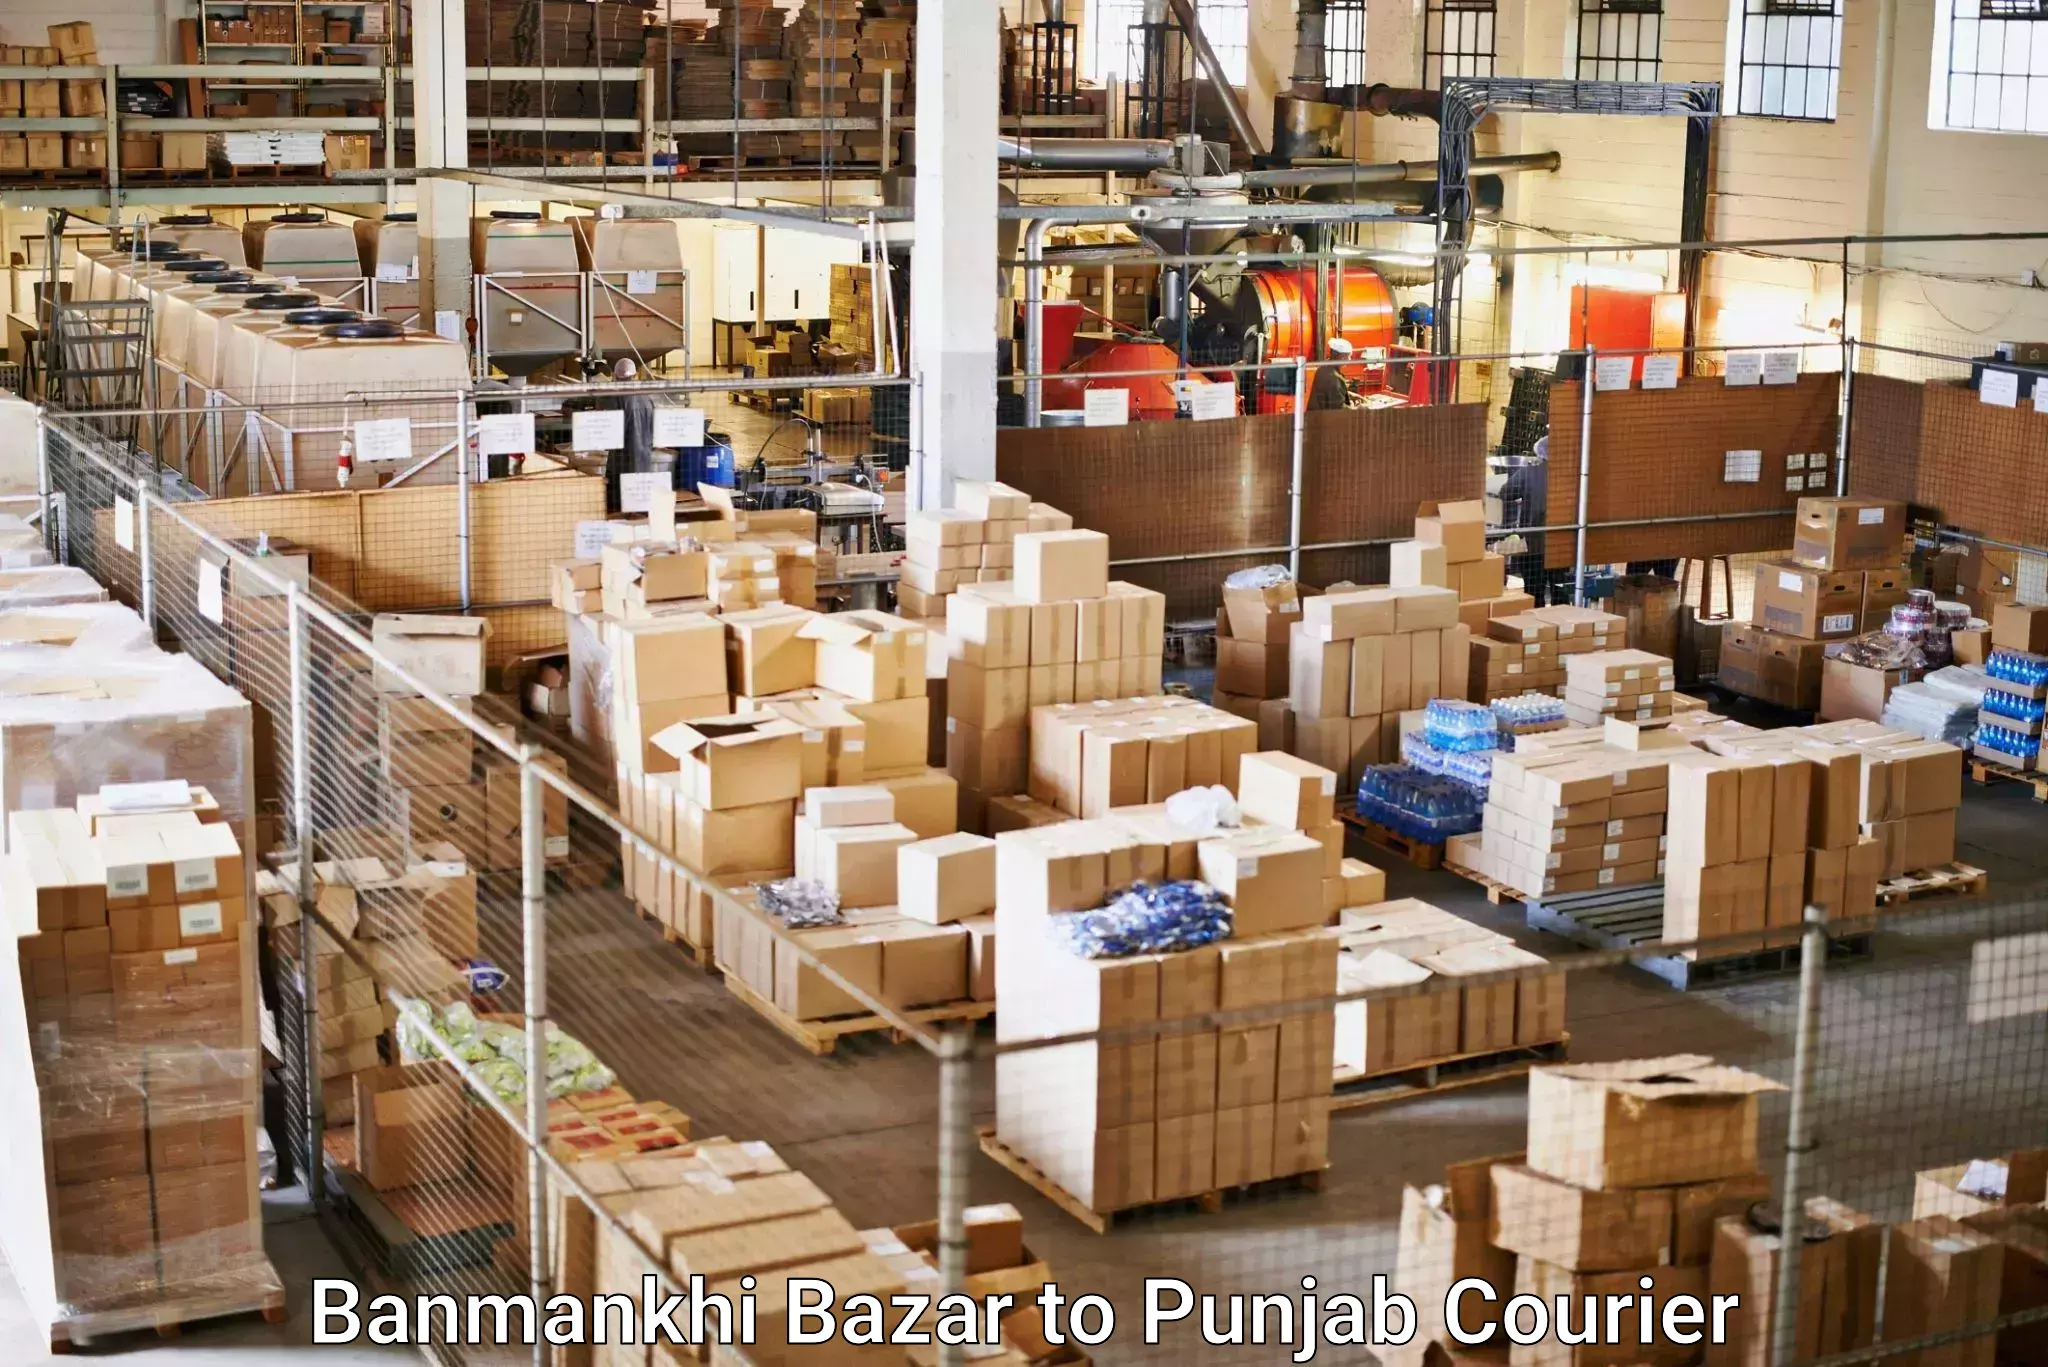 Nationwide parcel services Banmankhi Bazar to Ajnala